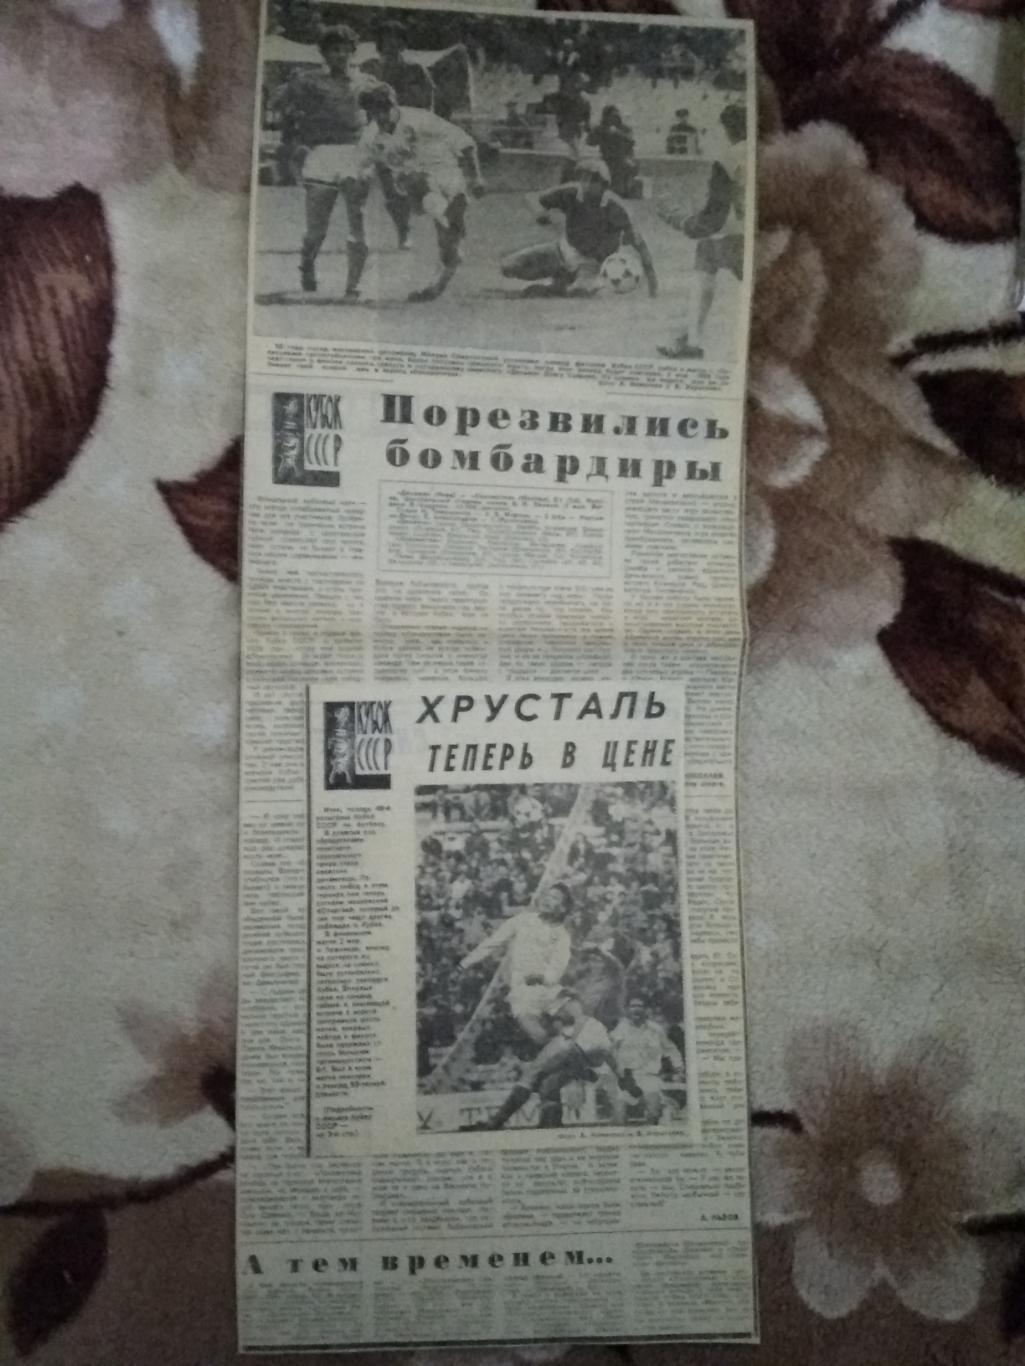 Статья.Футбол.Динамо (Киев) - Локомотив (Москва).Кубок СССР финал 1990 г.